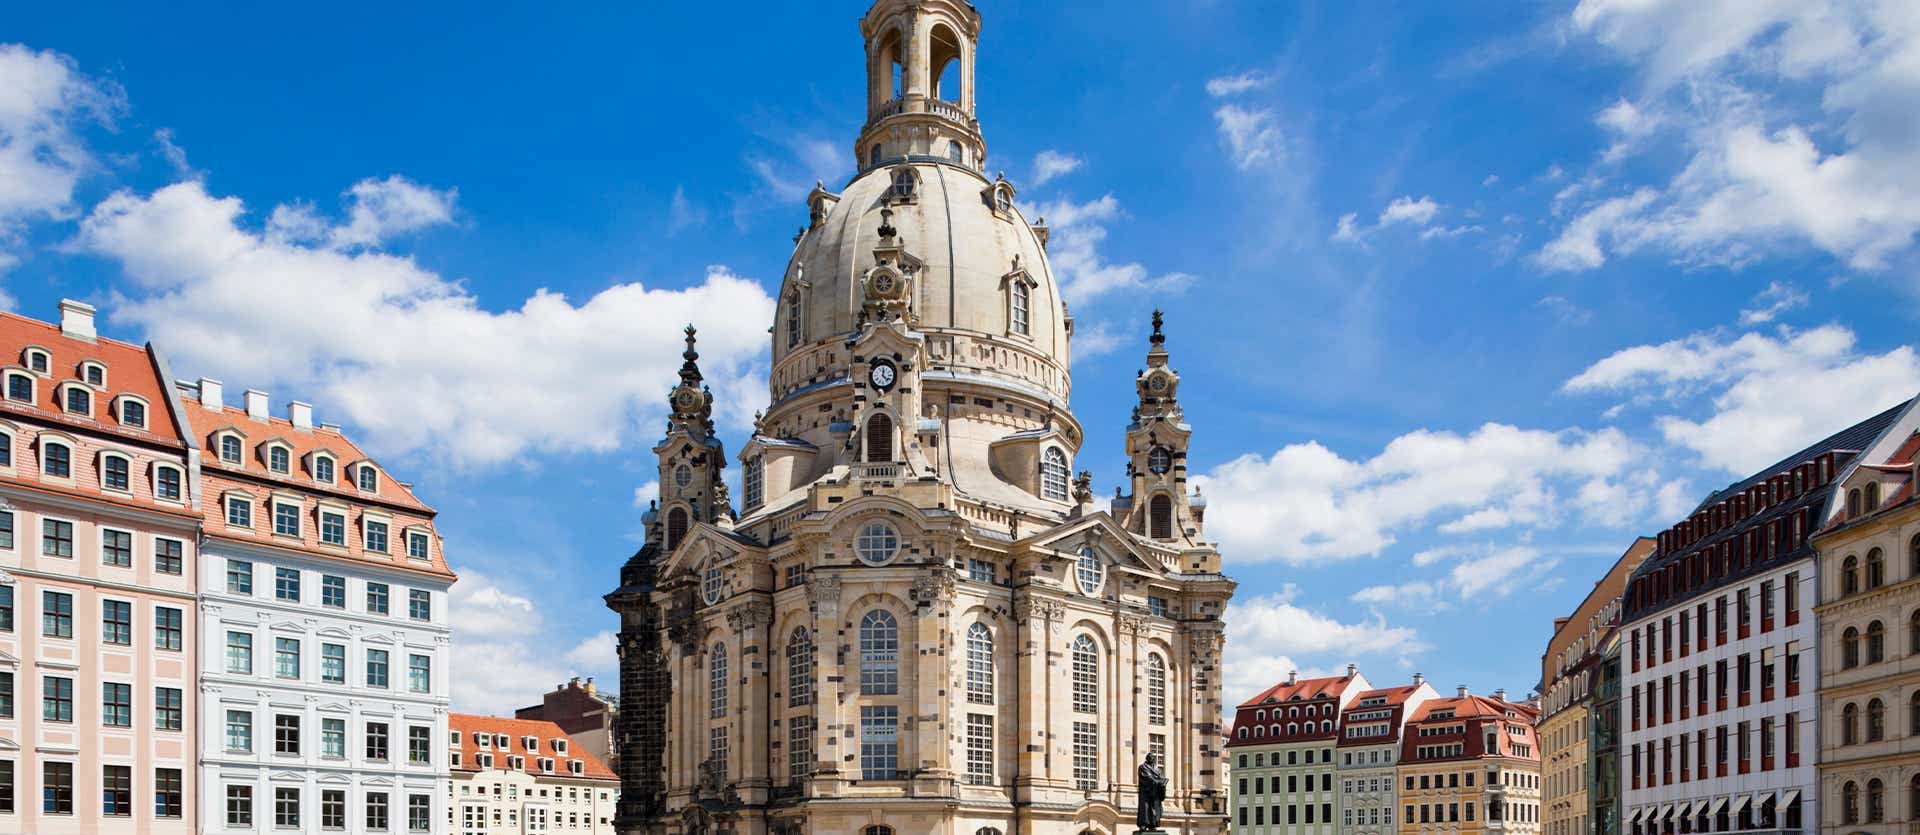 Iglesia de Nuestra Señora <span class="iconos separador"></span> Dresde <span class="iconos separador"></span> Alemania